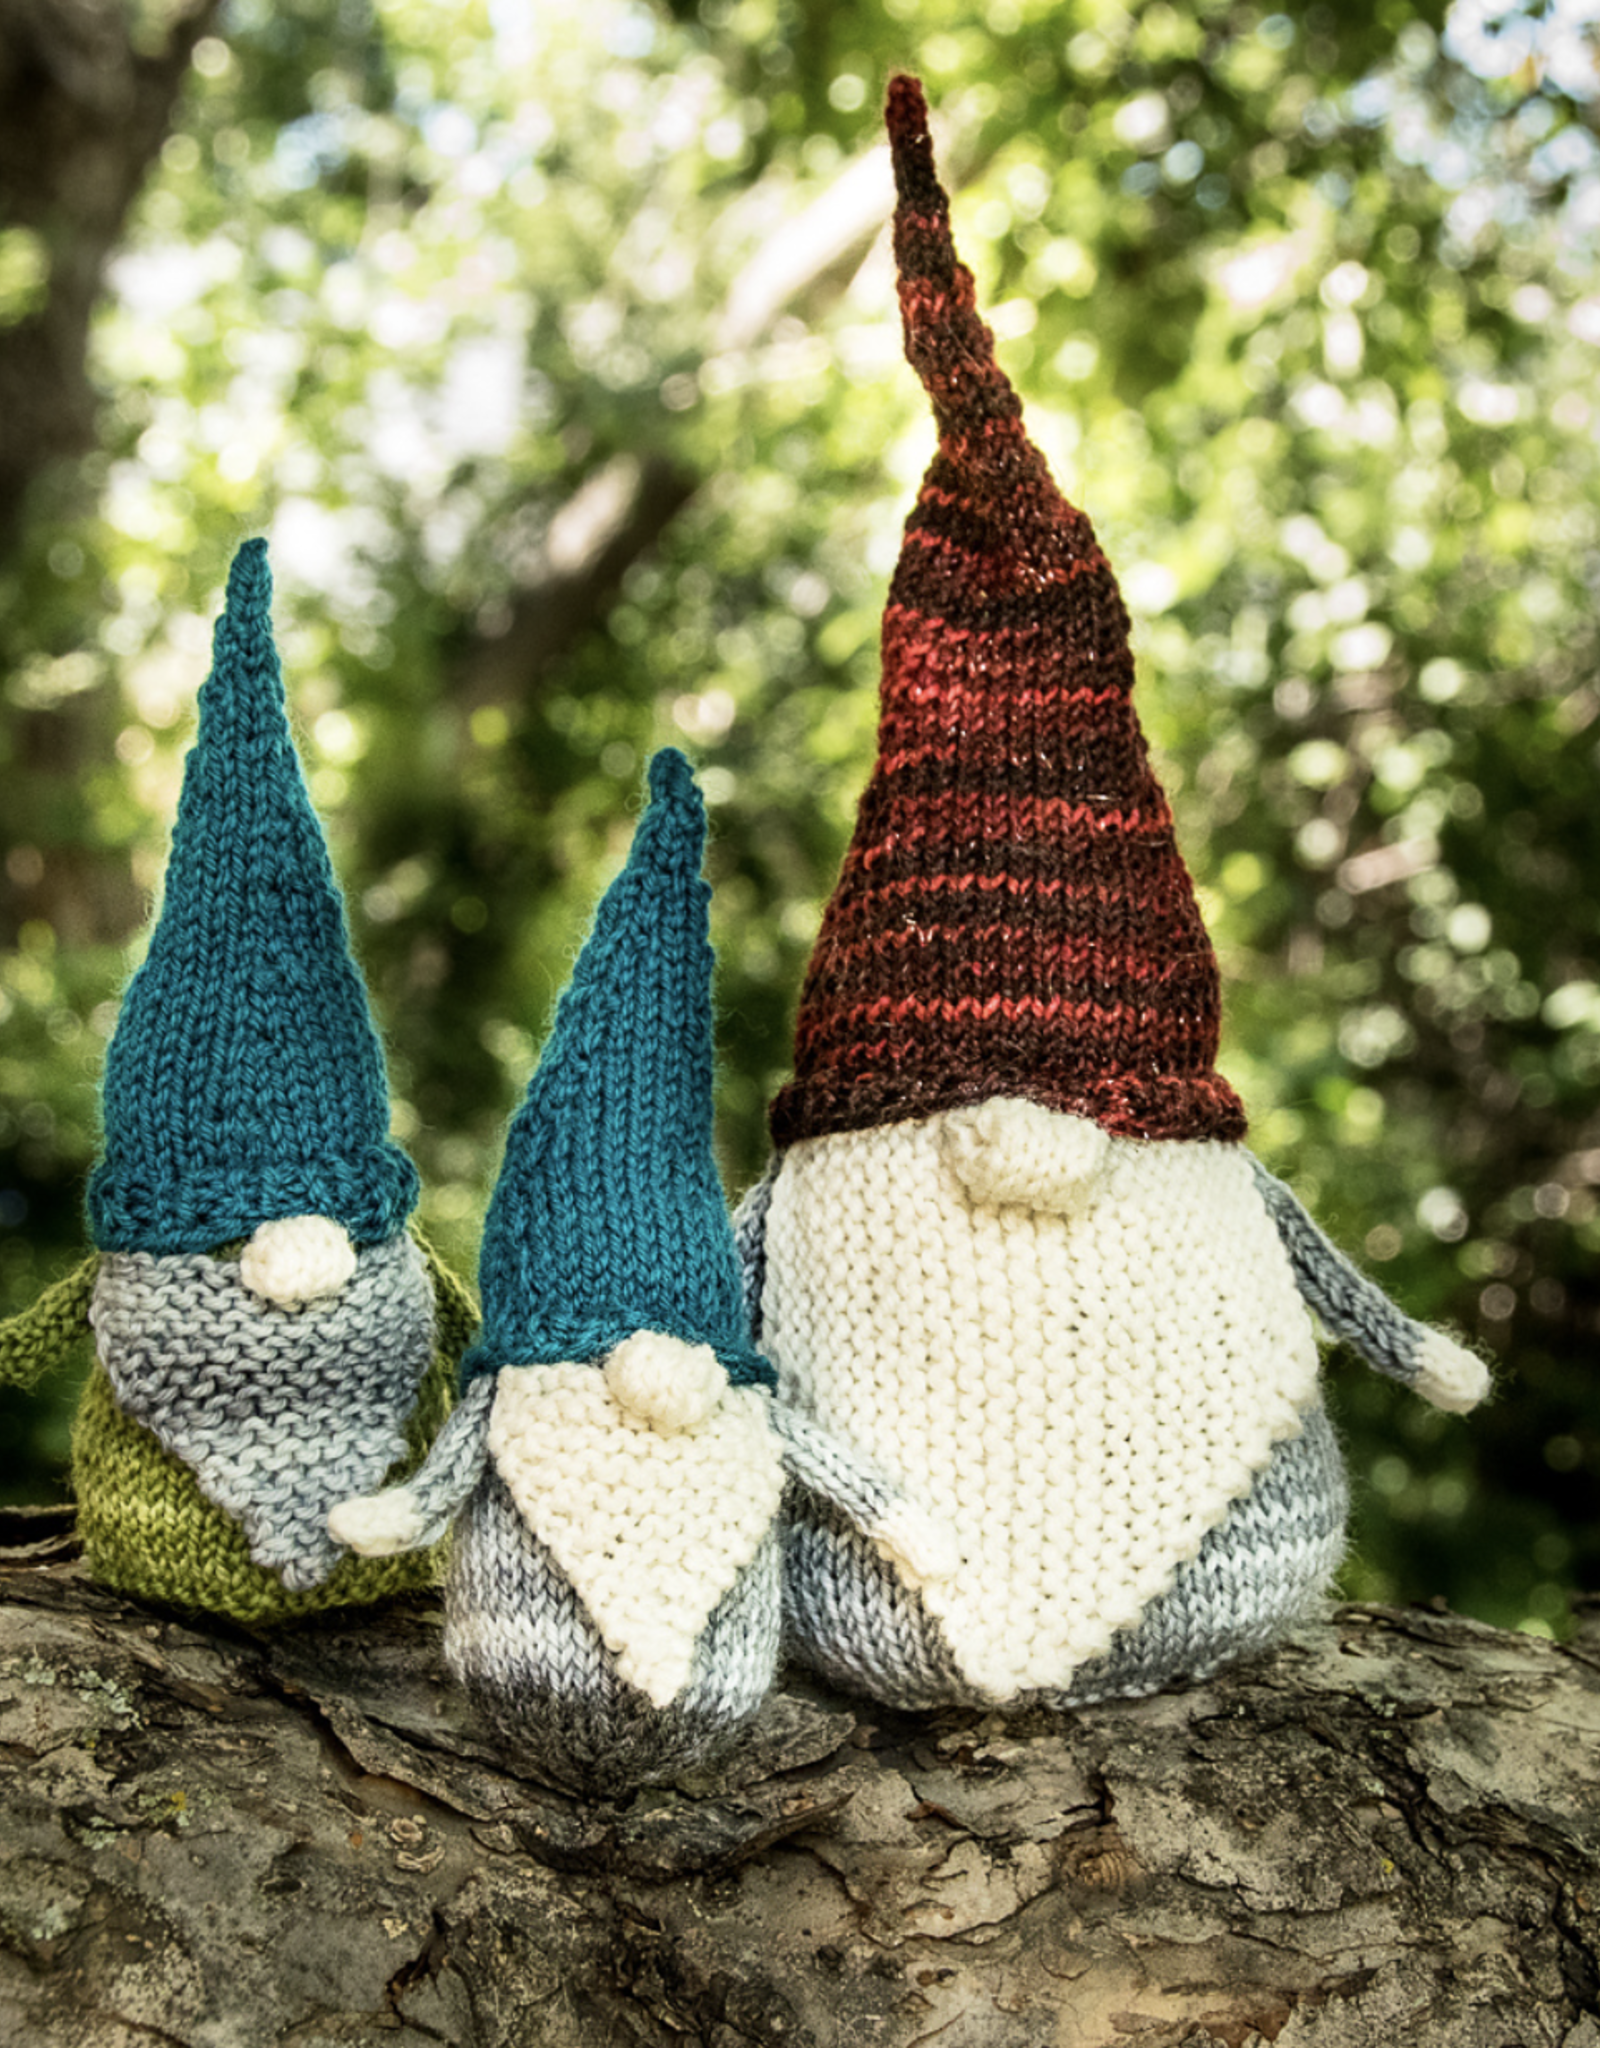 Gnit a Gnome  - Thursdays, June 16 & 23, 5-7pm